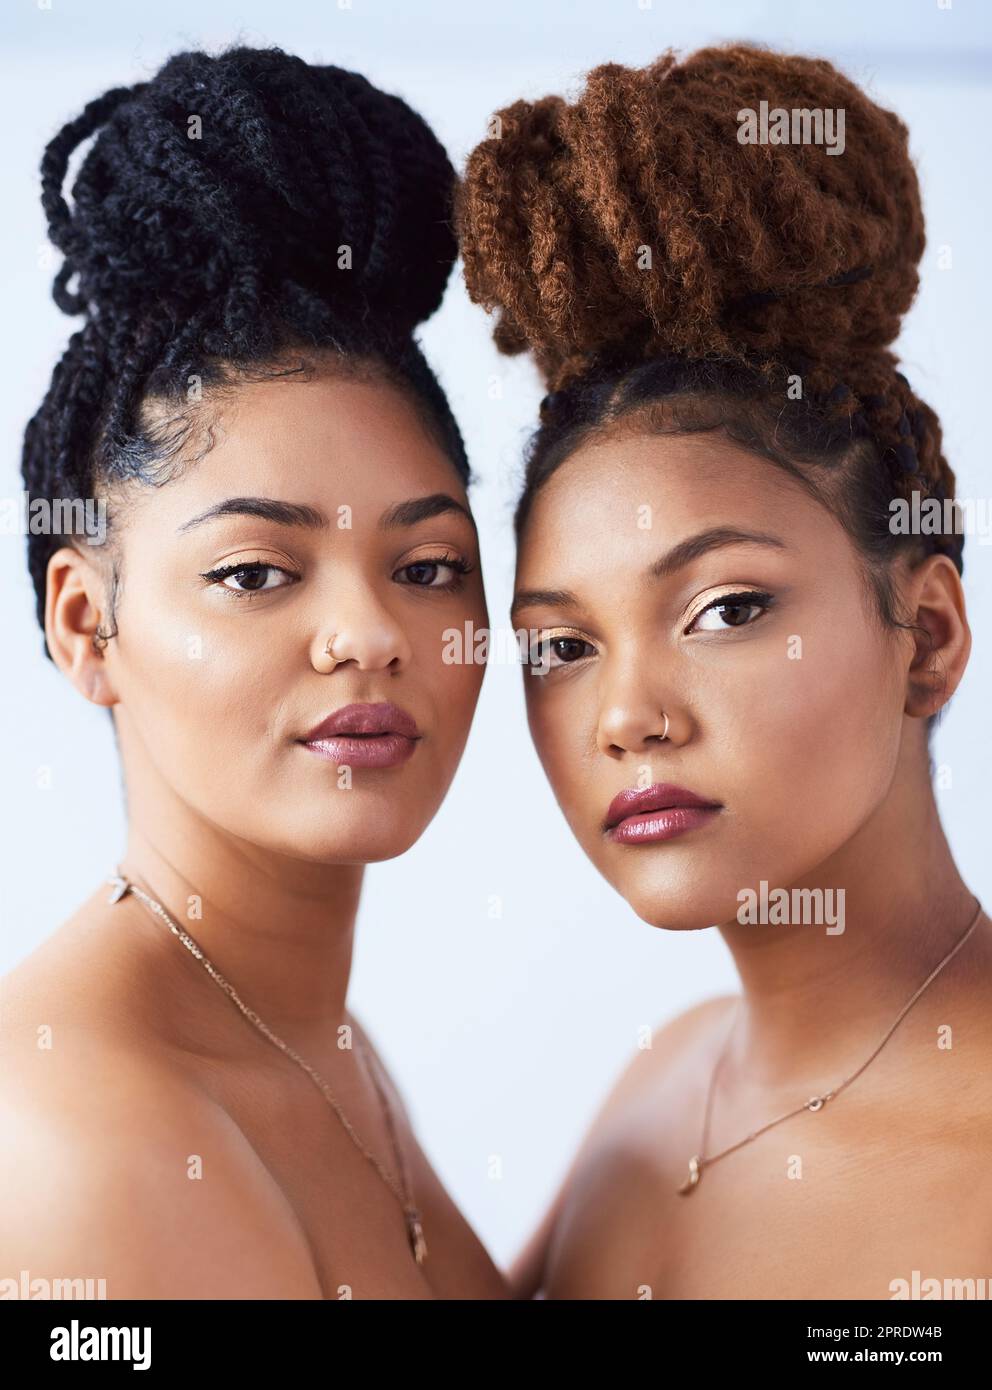 Haare zurück und sieht wunderschön aus. Studioaufnahme von zwei schönen jungen Frauen, die vor einem grauen Hintergrund posieren. Stockfoto